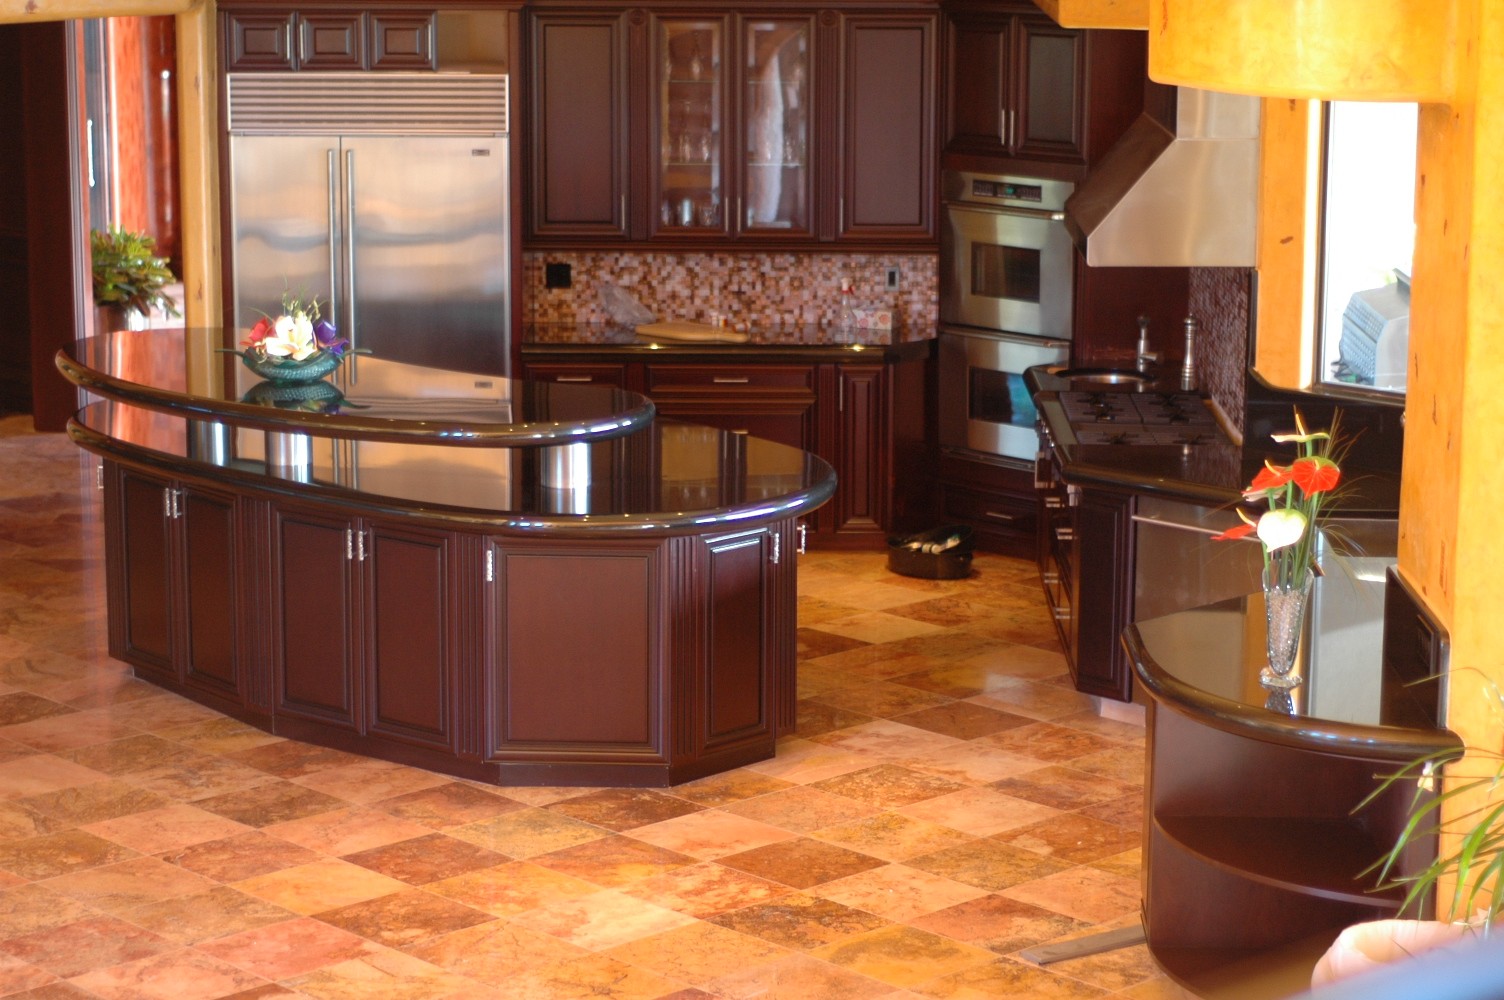 granite kitchen counter designs photo - 7